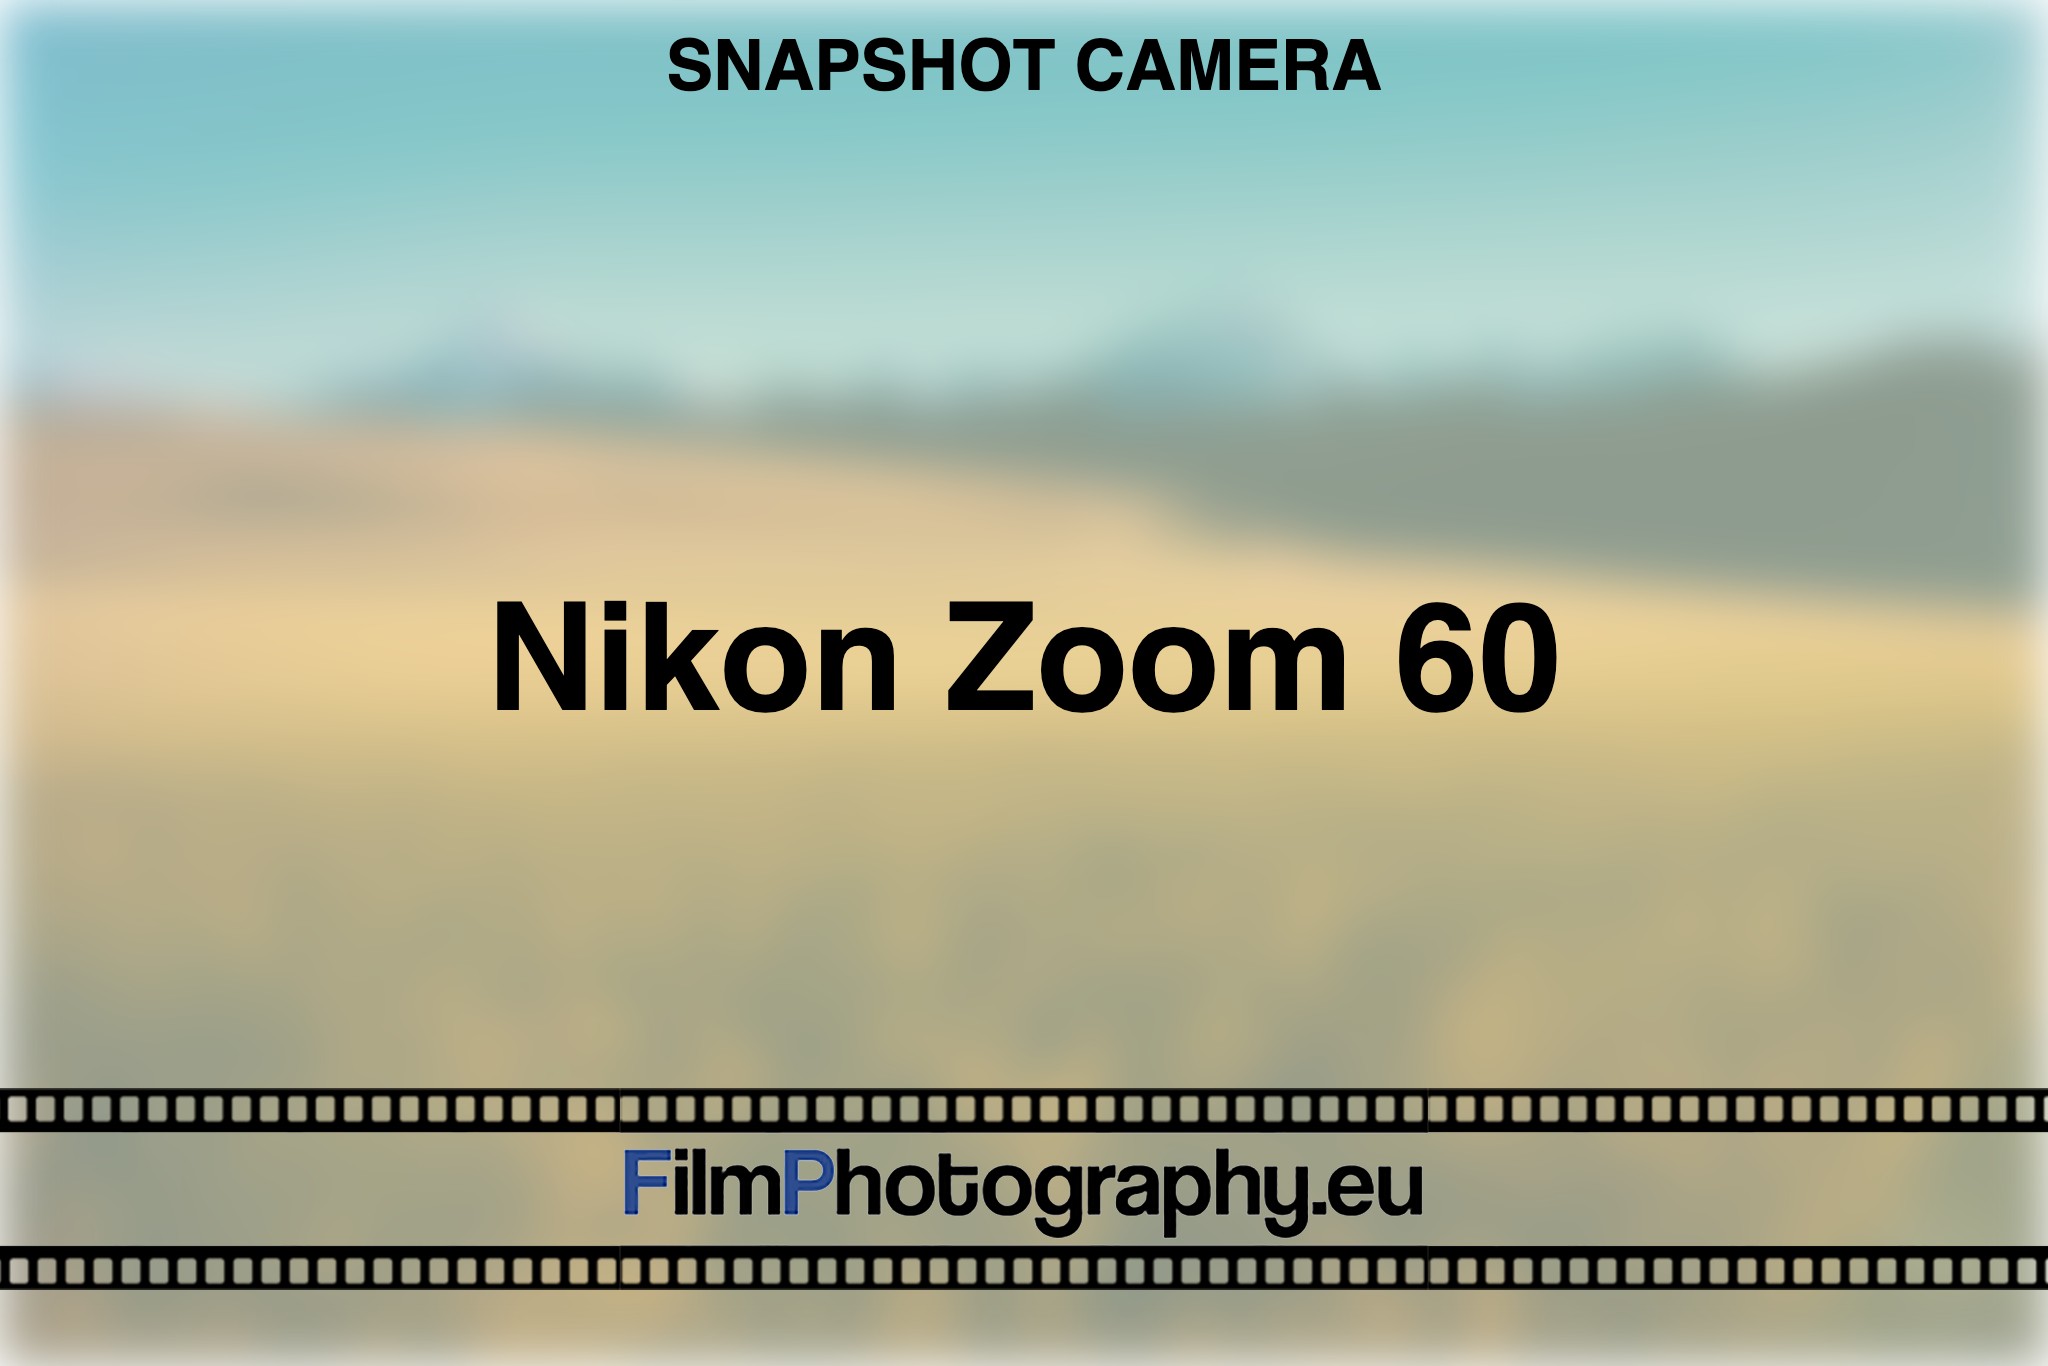 nikon-zoom-60-snapshot-camera-bnv